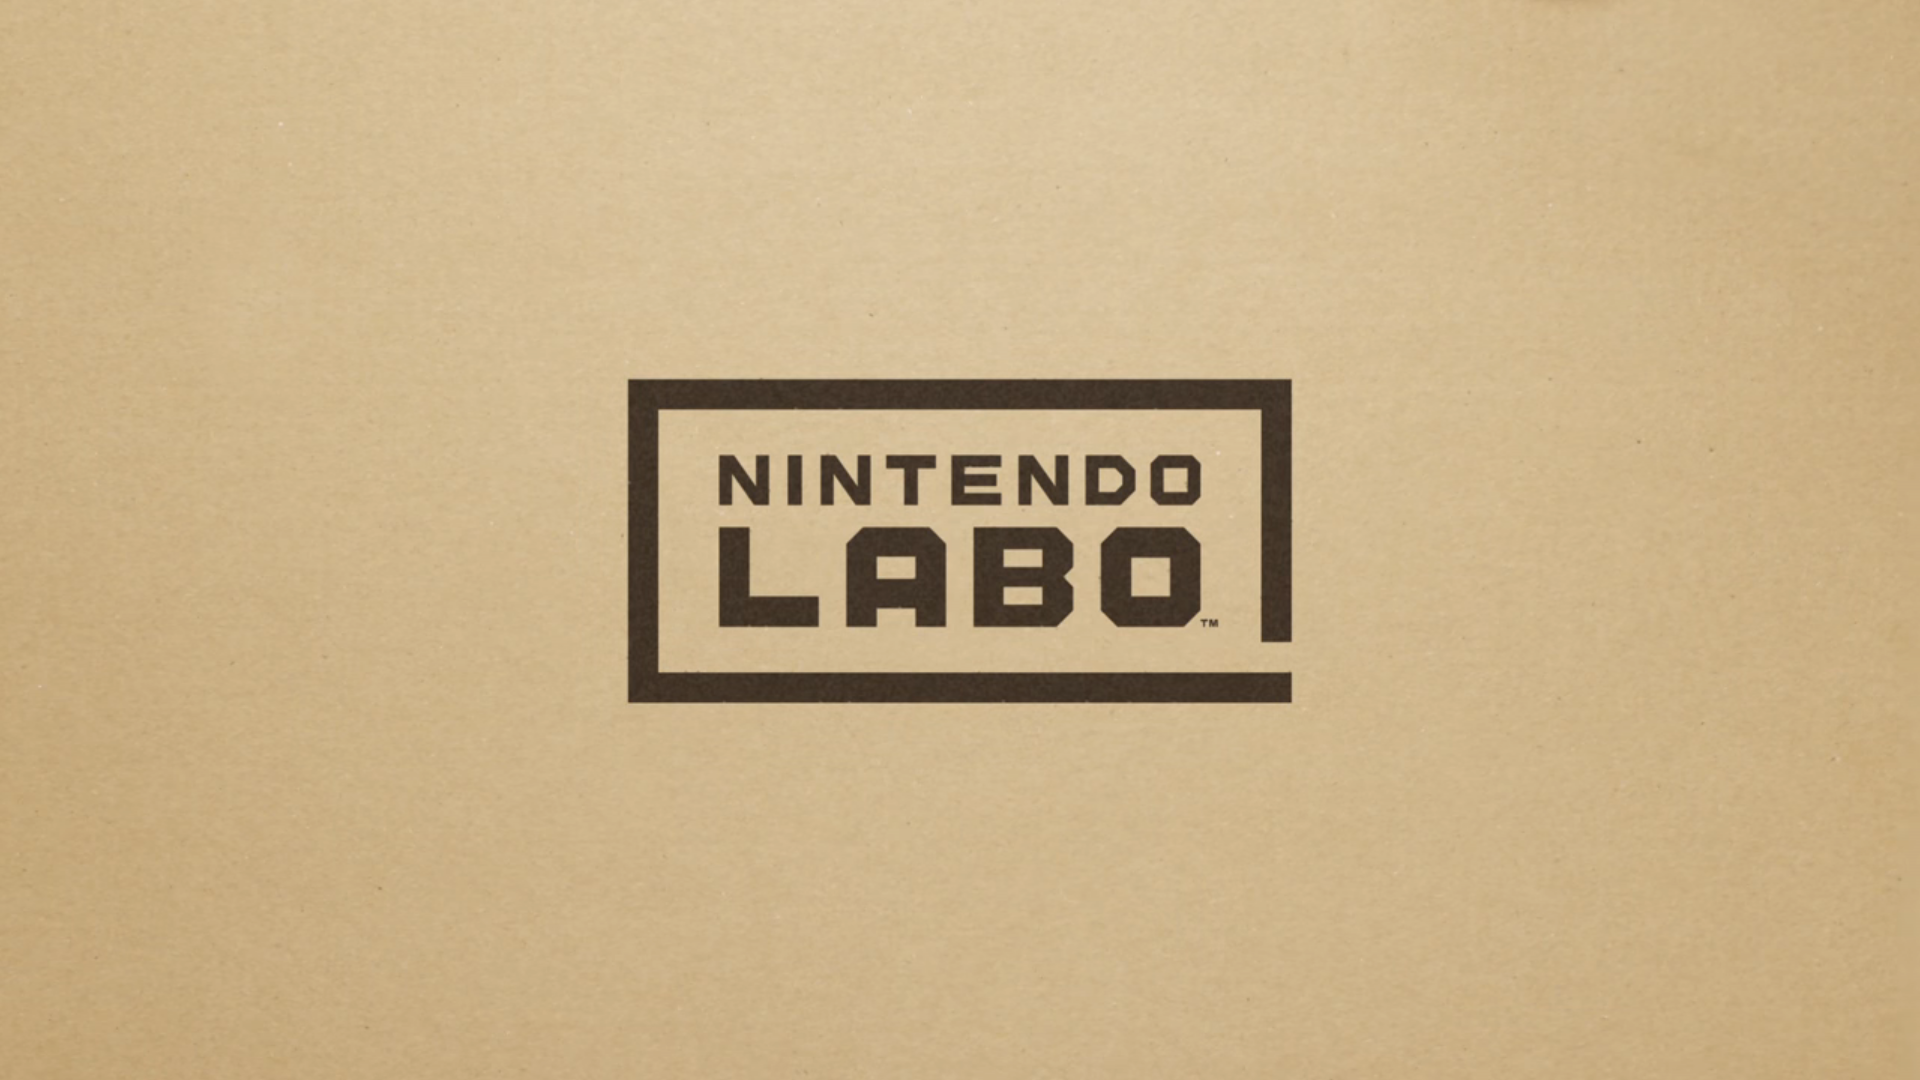 Nintendo Labo – Cardboard Fun 4 Kids